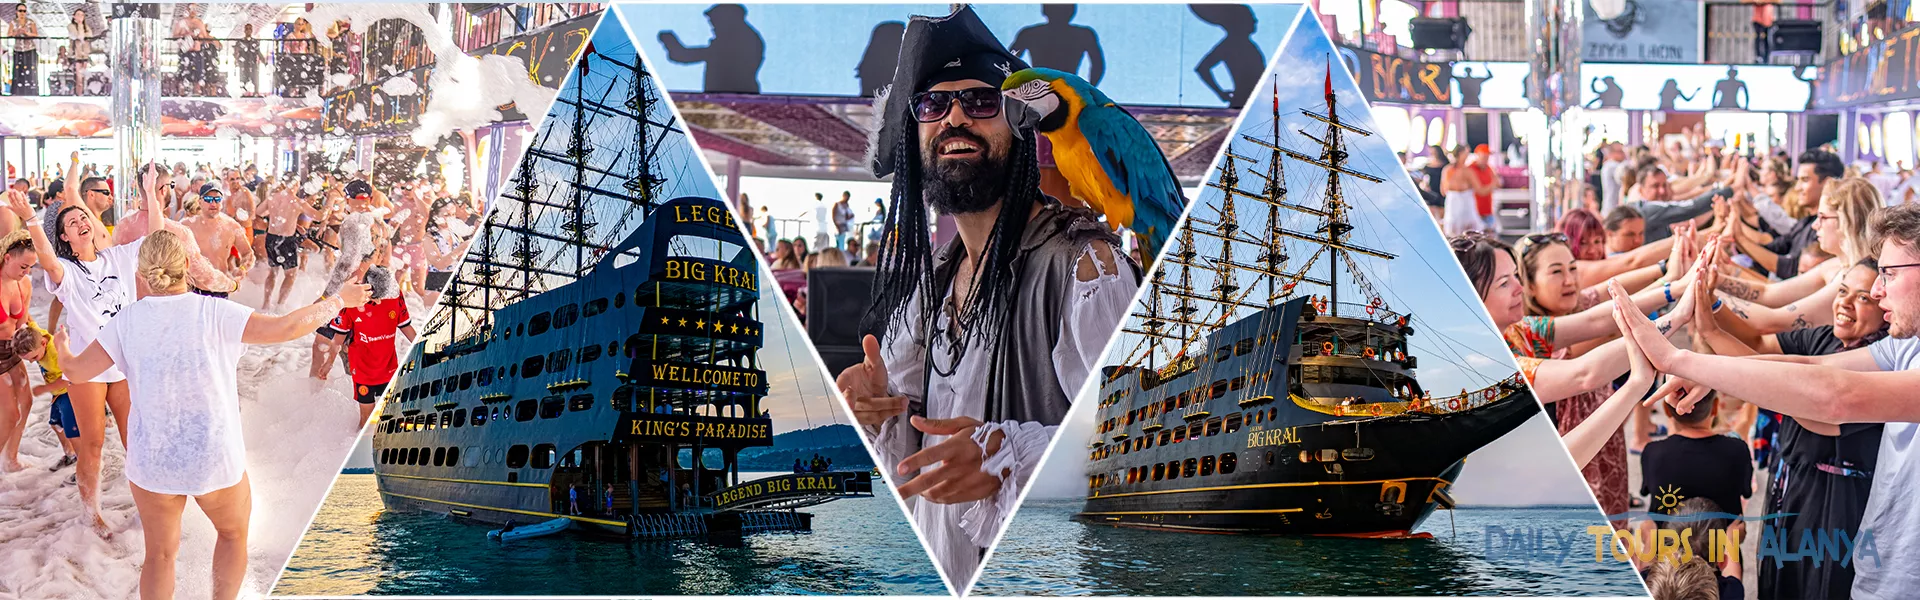 Alanya Legend Big Kral Boat Tour